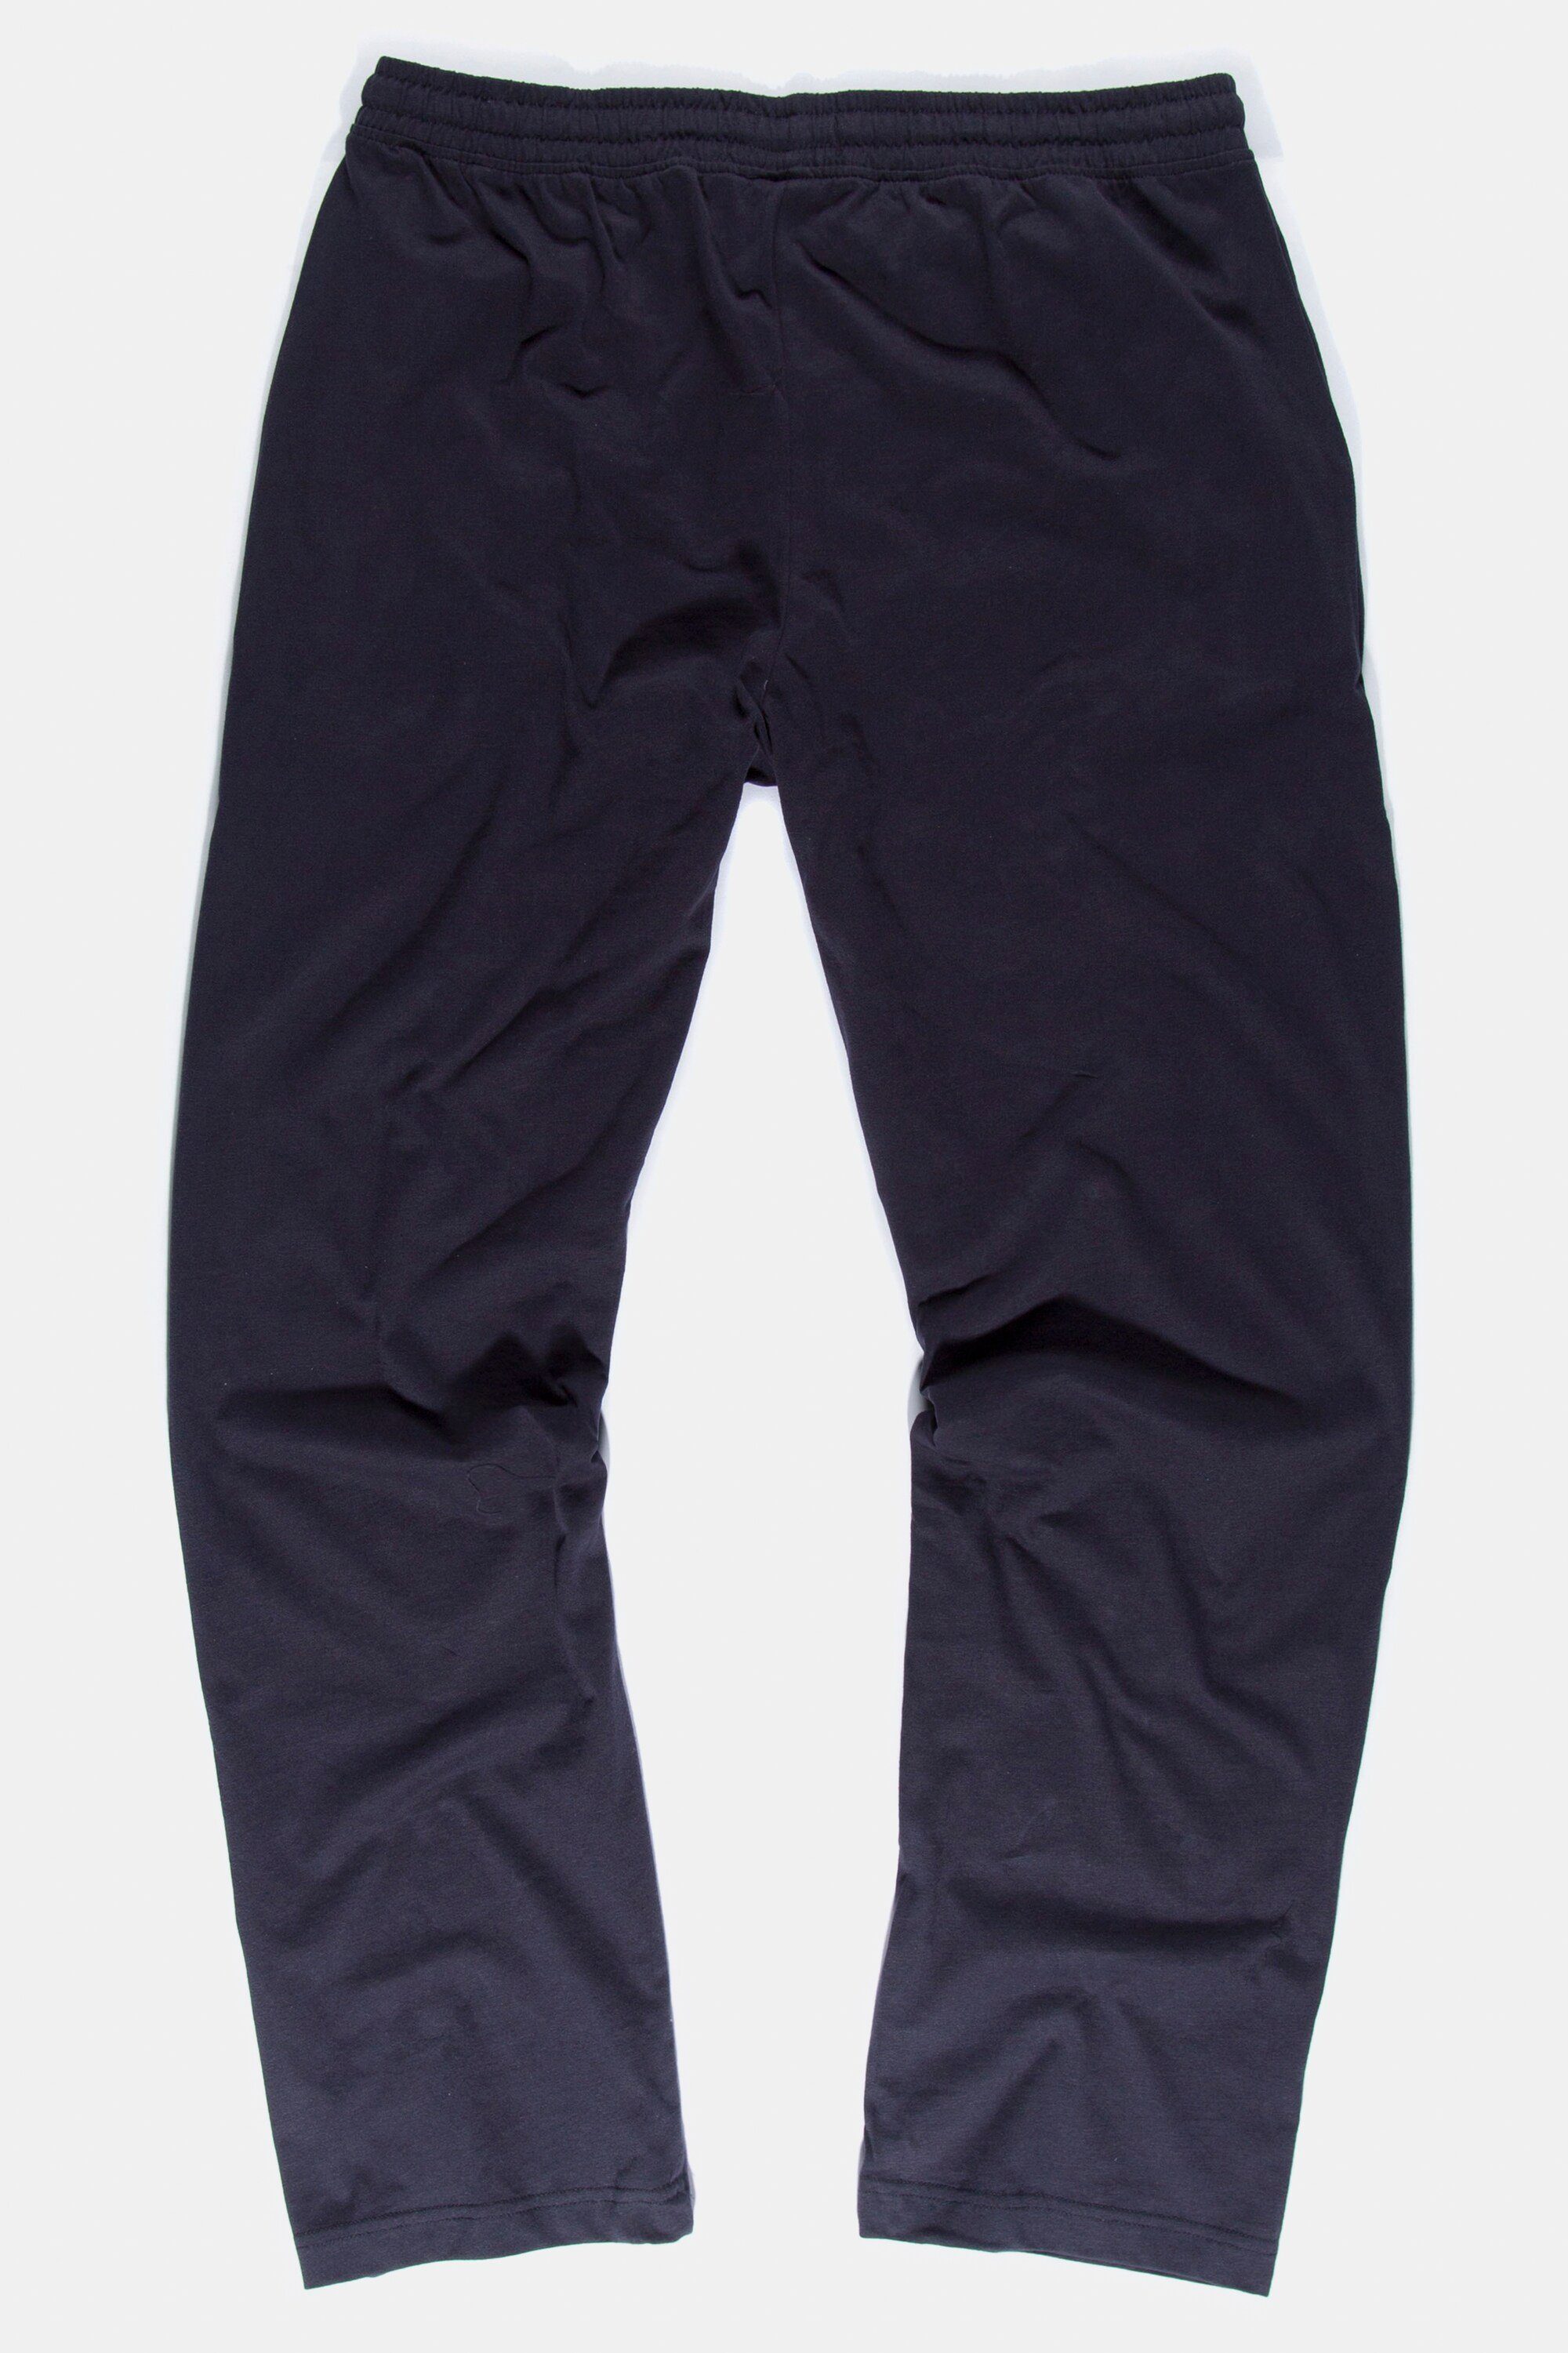 Elastikbund lange JP1880 marine Homewear dunkel Schlafanzug-Hose Schlafanzug Form